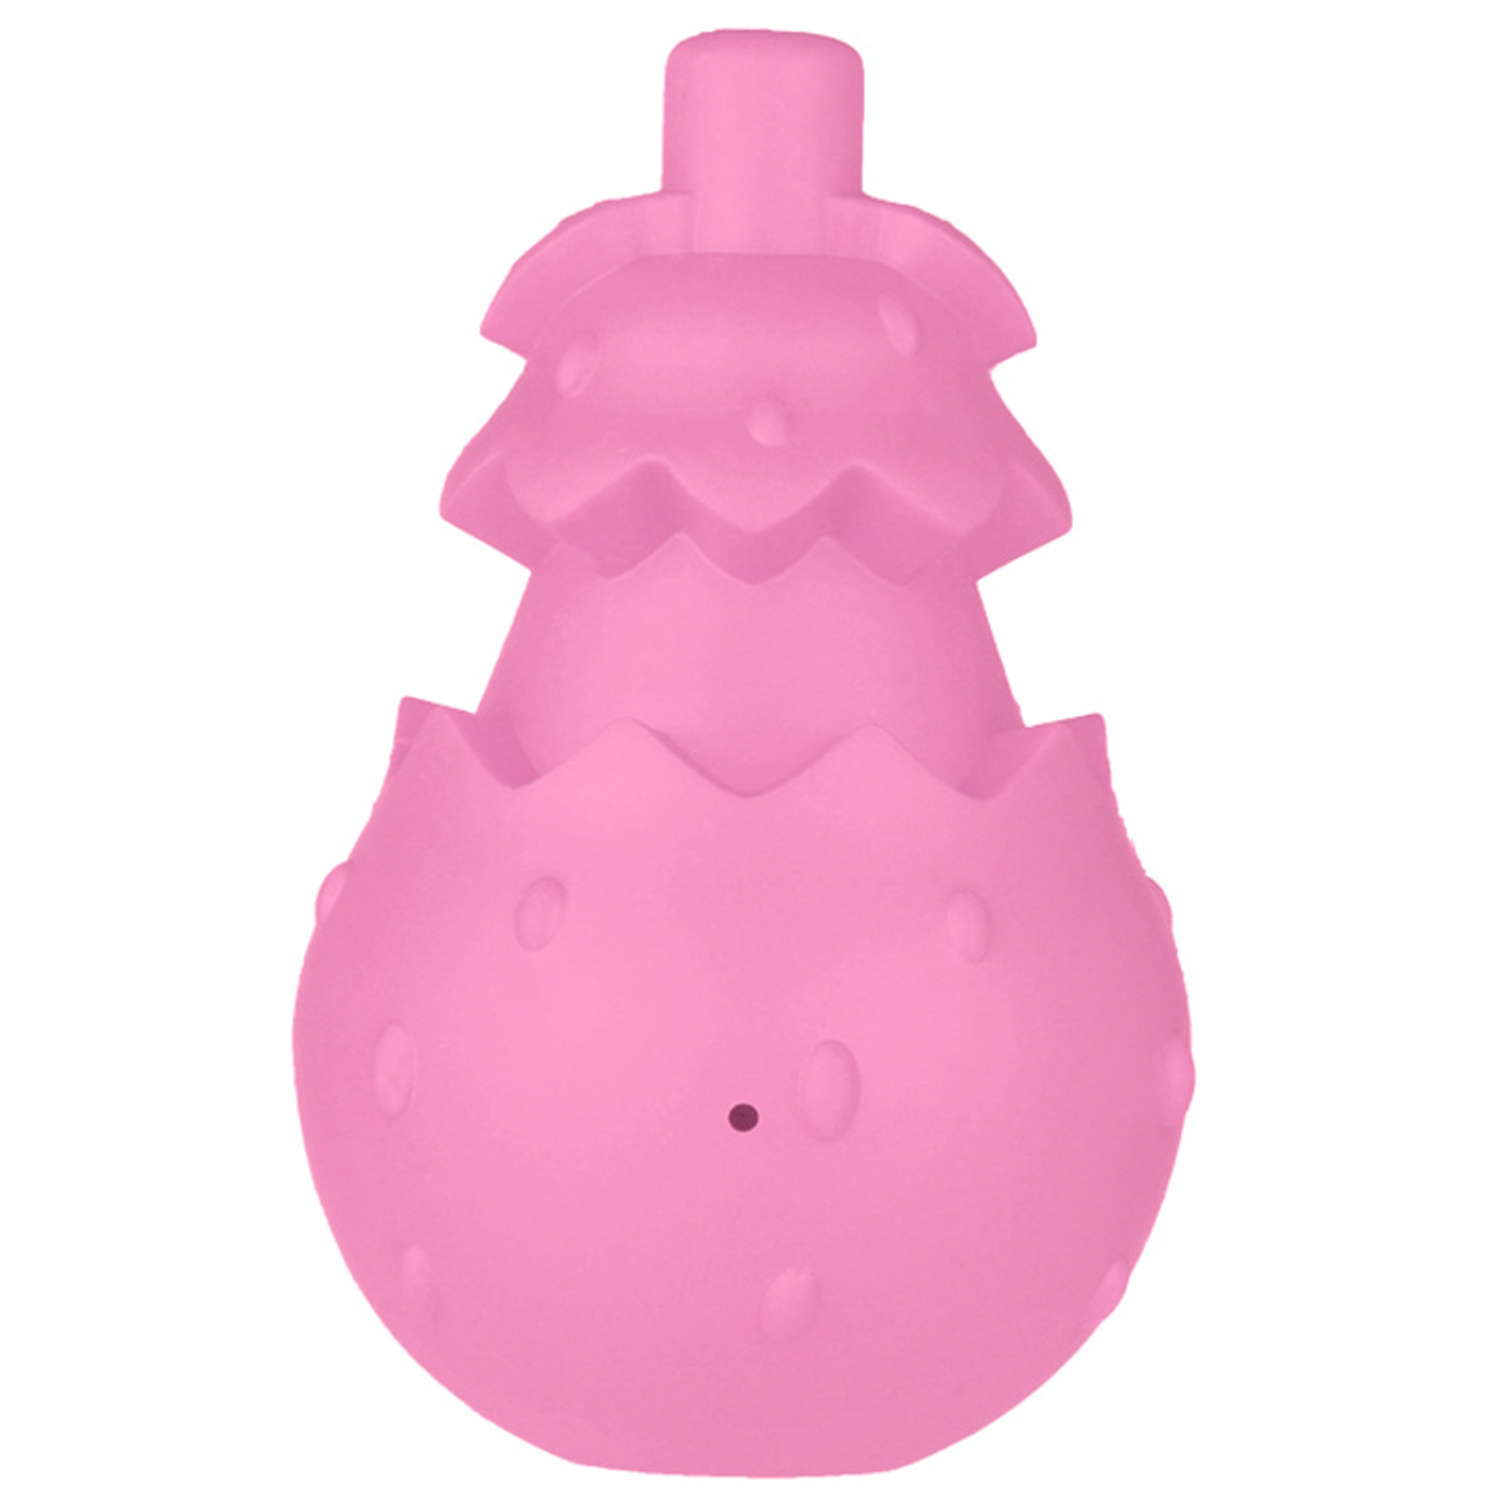 Mr.Kranch Mr.Kranch игрушка для собак с ароматом бекона, розовая (8х13 см) mr kranch mr kranch игрушка мяч для собак с ароматом бекона красный 6 5 см